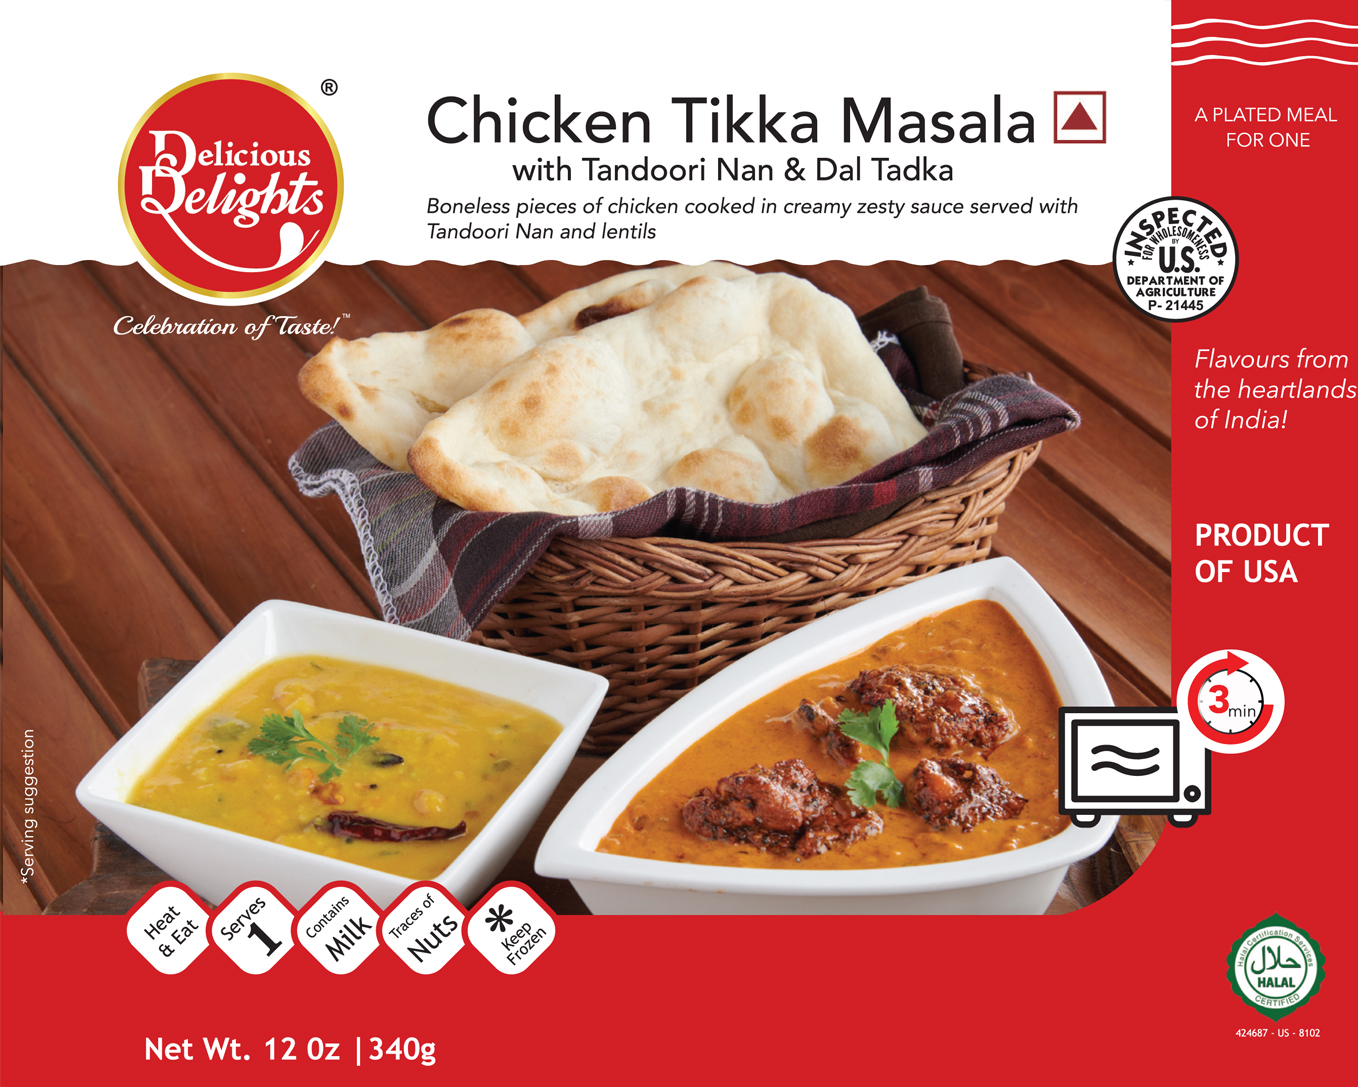 Delicious Delights Chicken Tikka Masala with Tandoori Nan and Dal Tadka